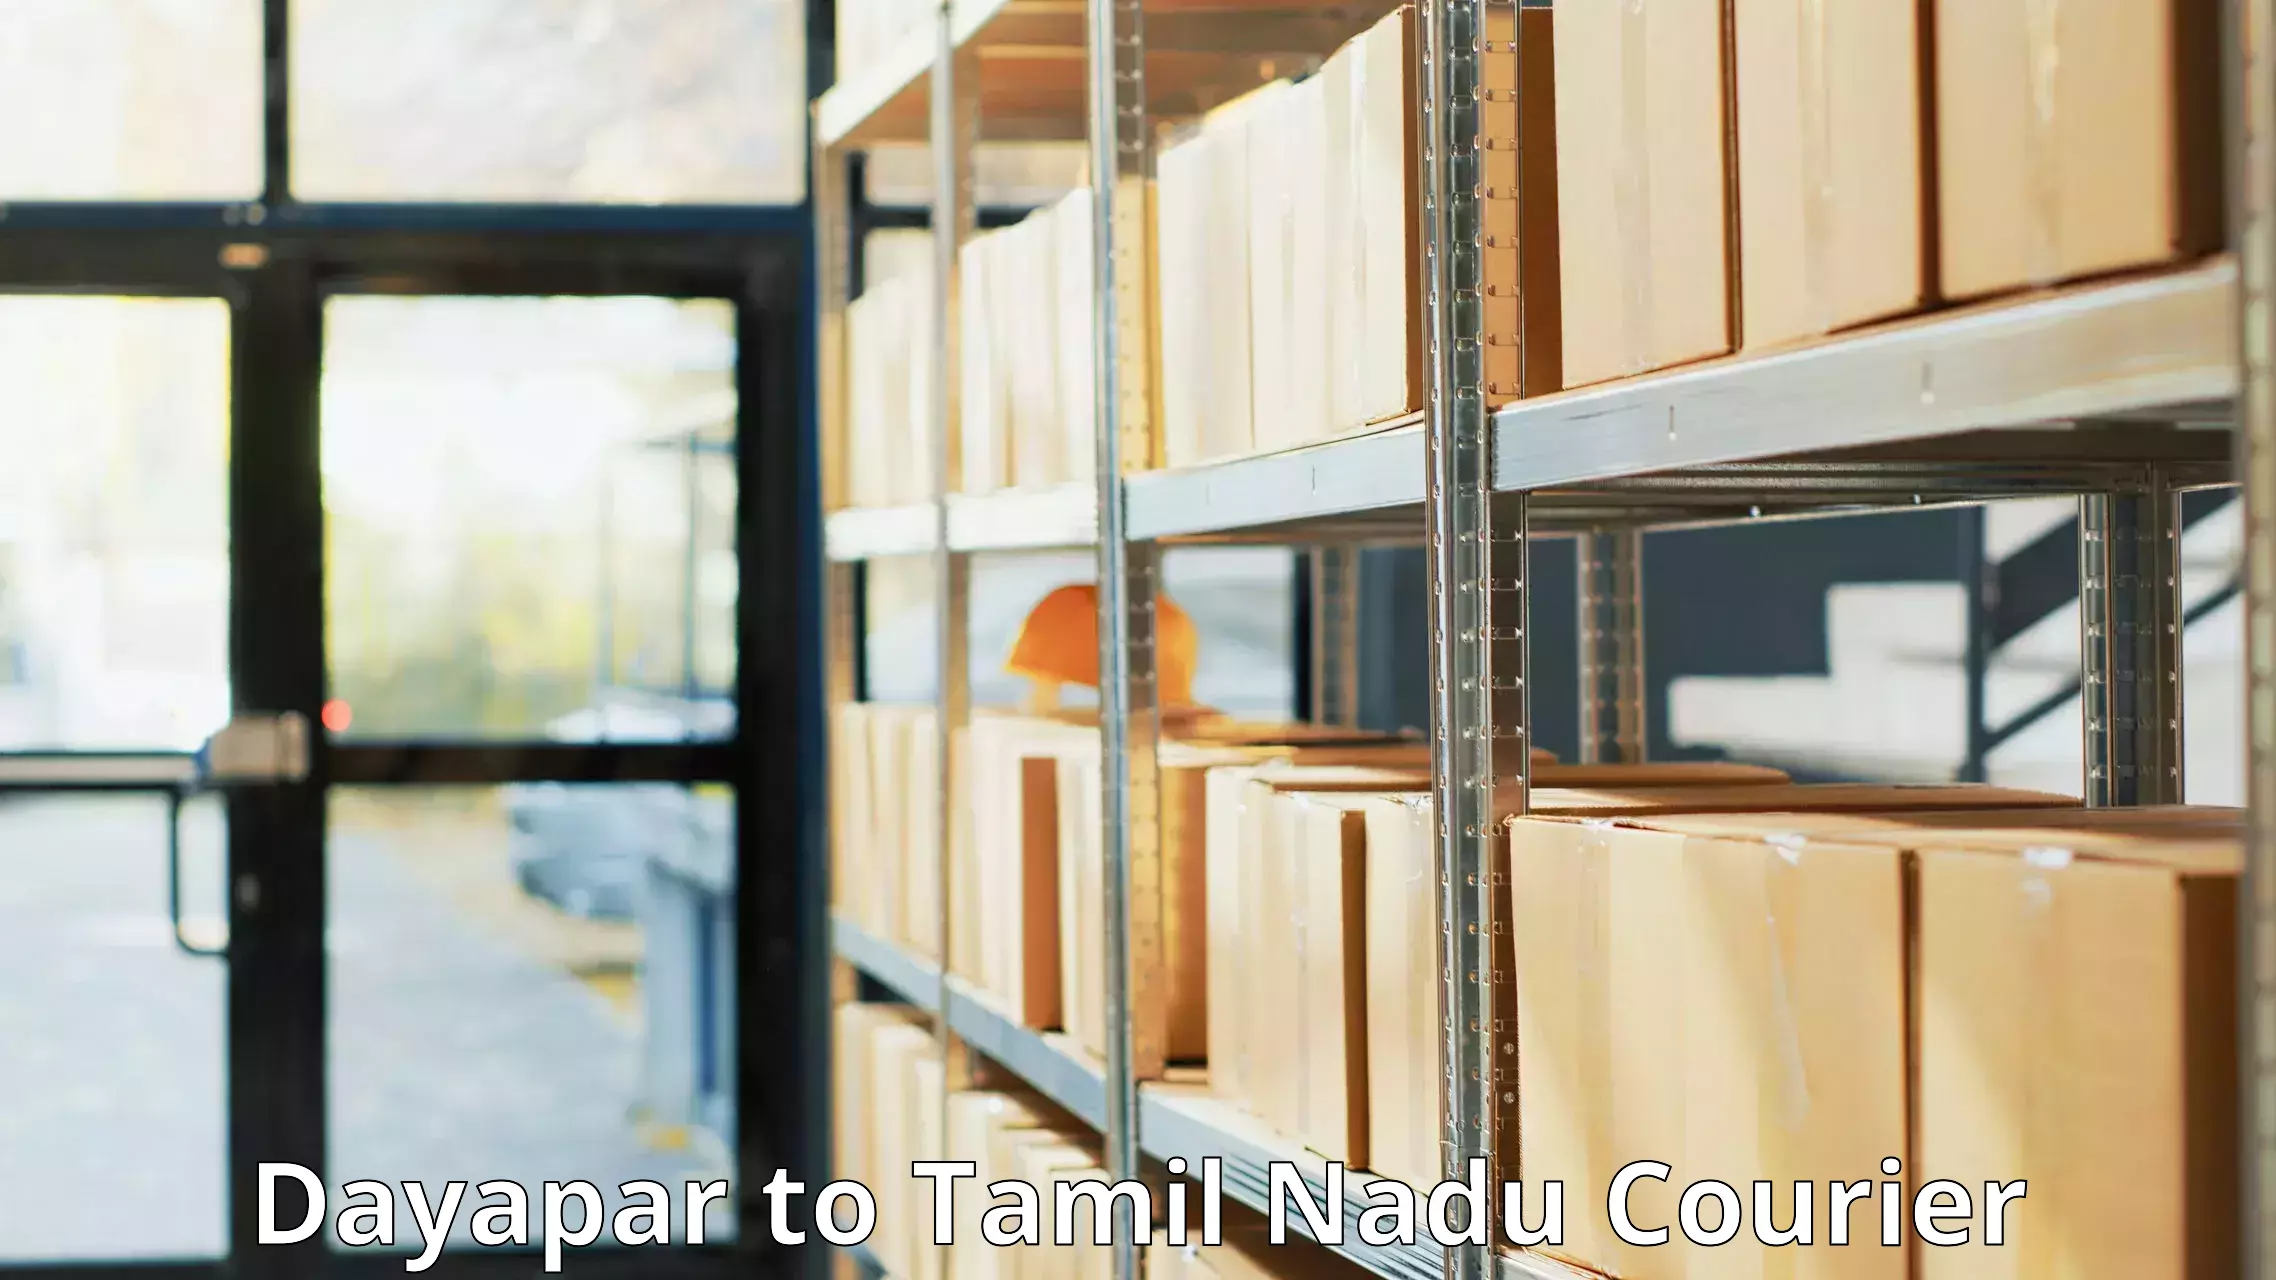 Quick parcel dispatch Dayapar to Tamil Nadu